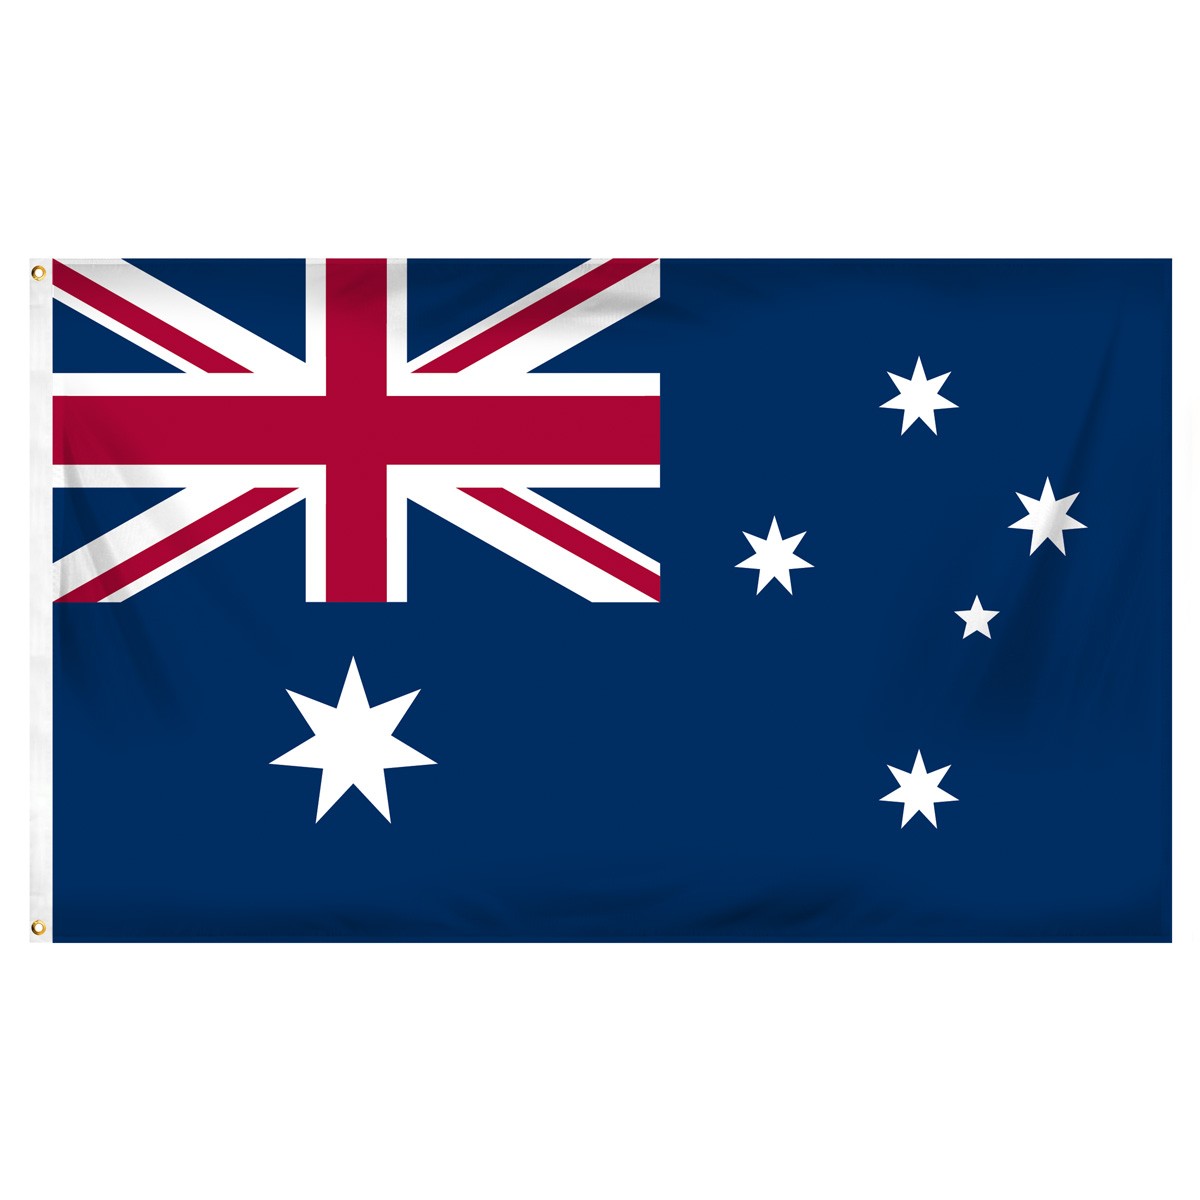 Australia Single Table Flag